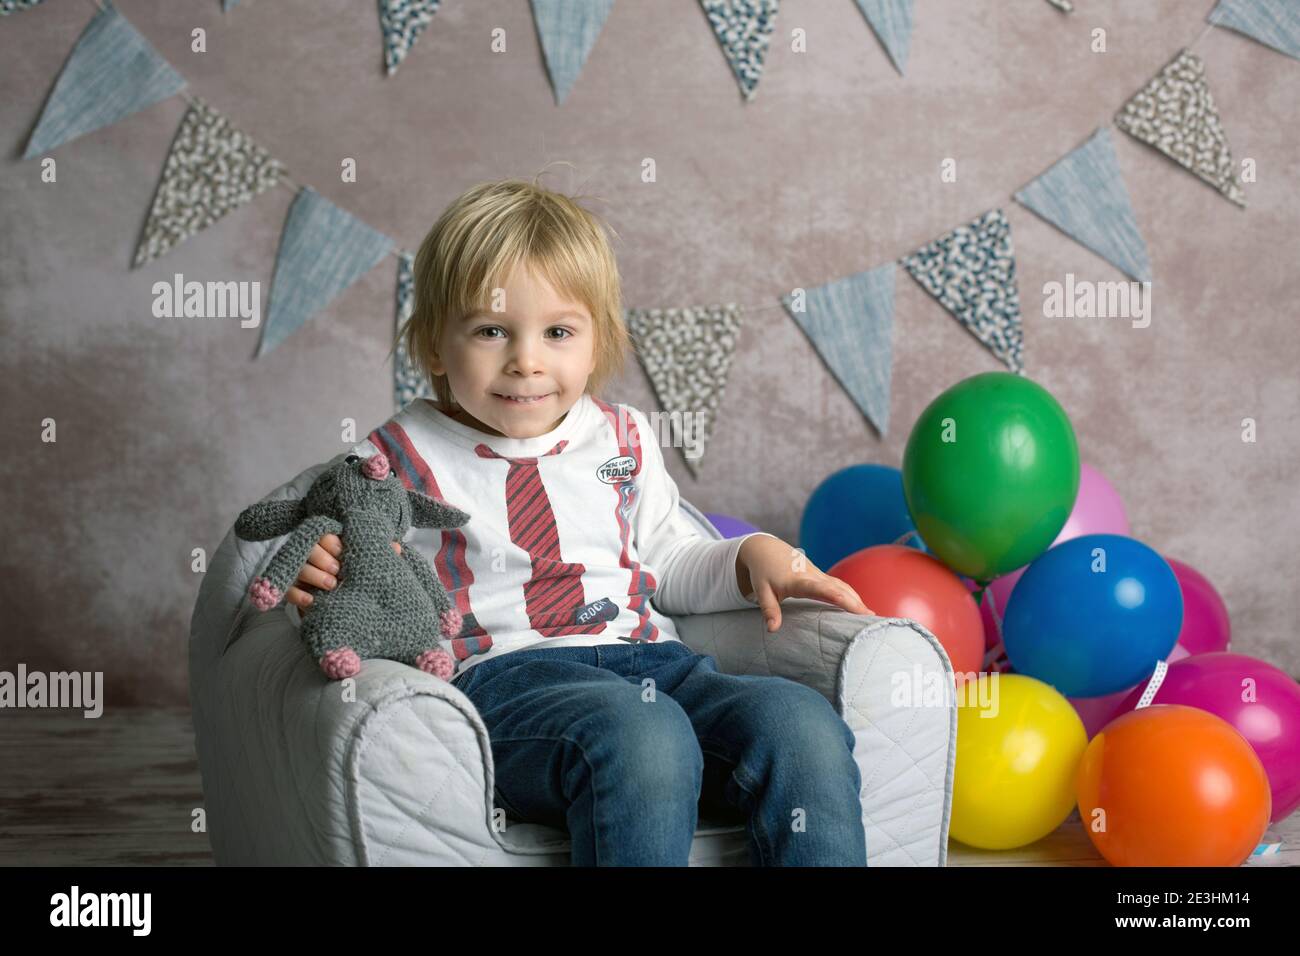 Cute blonde Kleinkind Kind, Junge, sitzen auf kleinen Baby-Sessel, spielen mit bunten Luftballons, glücklich lächelnd, innen erschossen Stockfoto